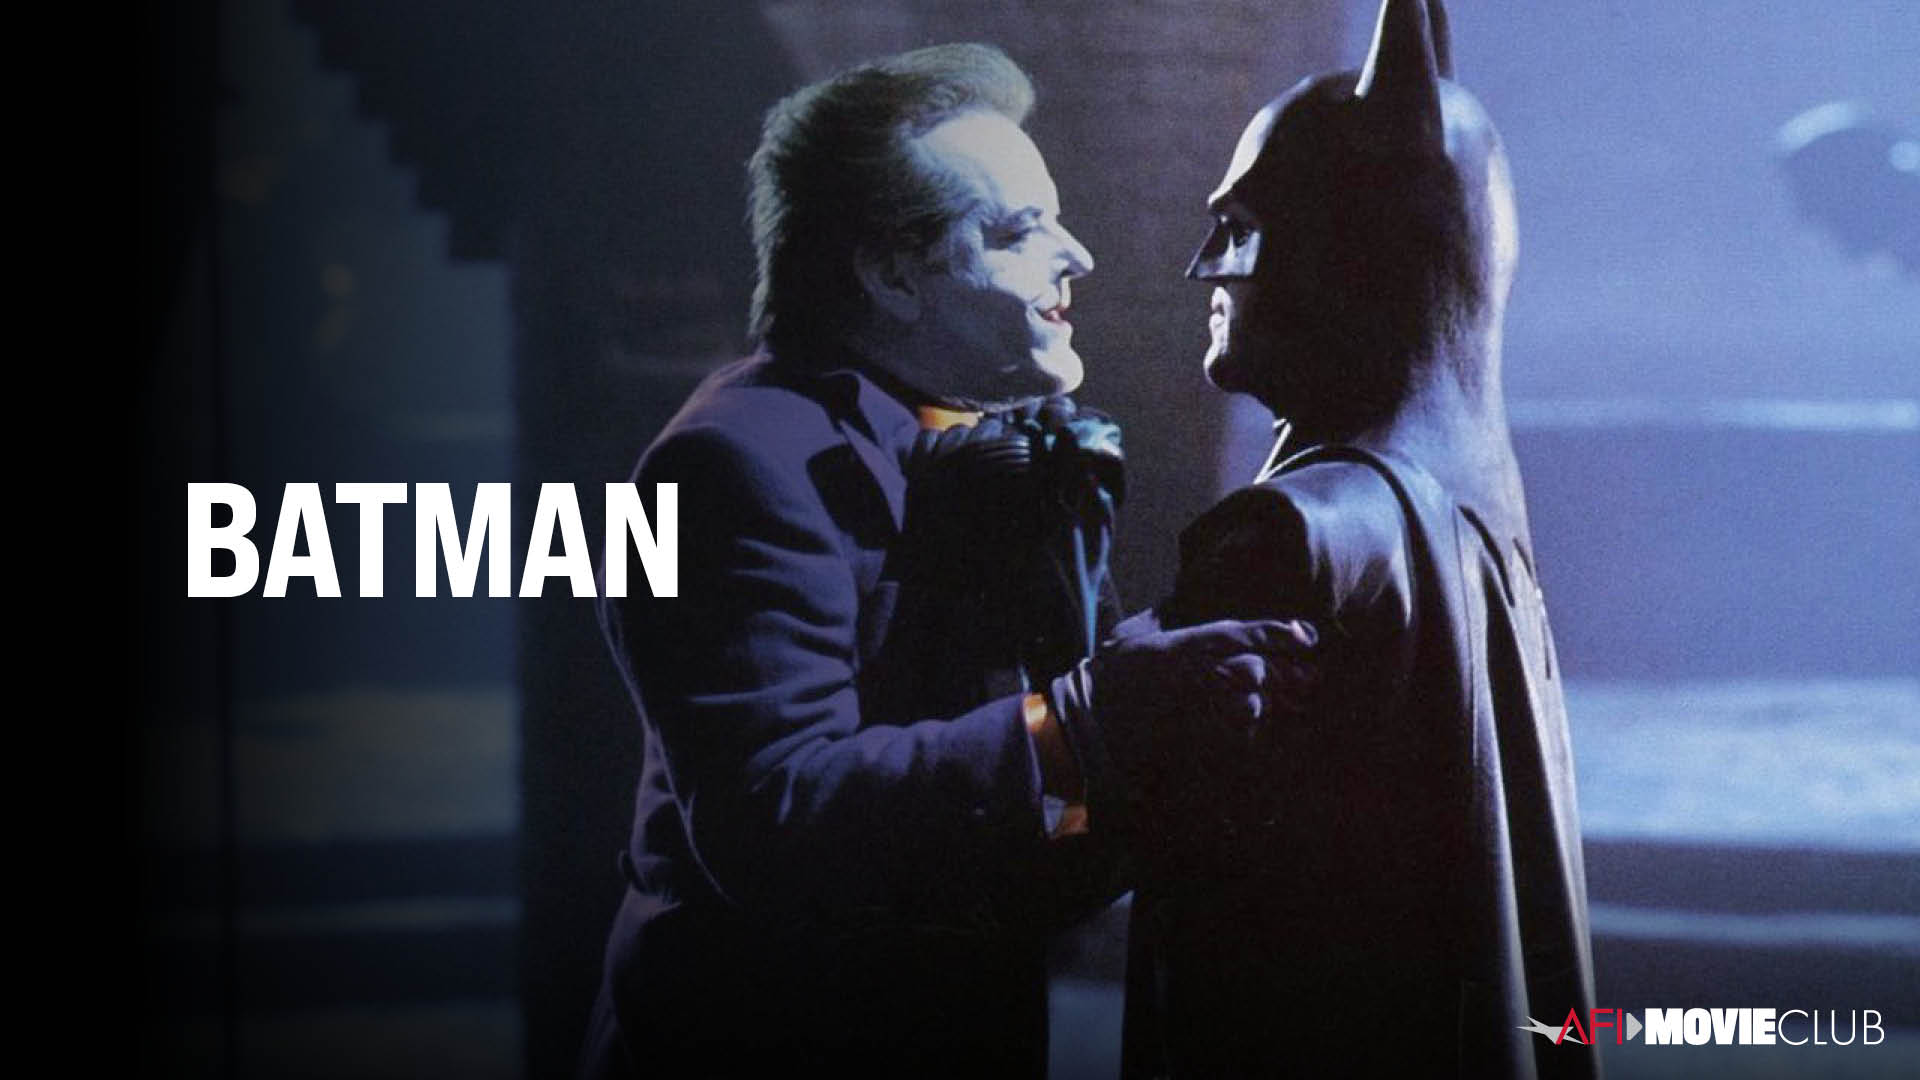 Batman Film Still - Jack Nicholson and Michael Keaton